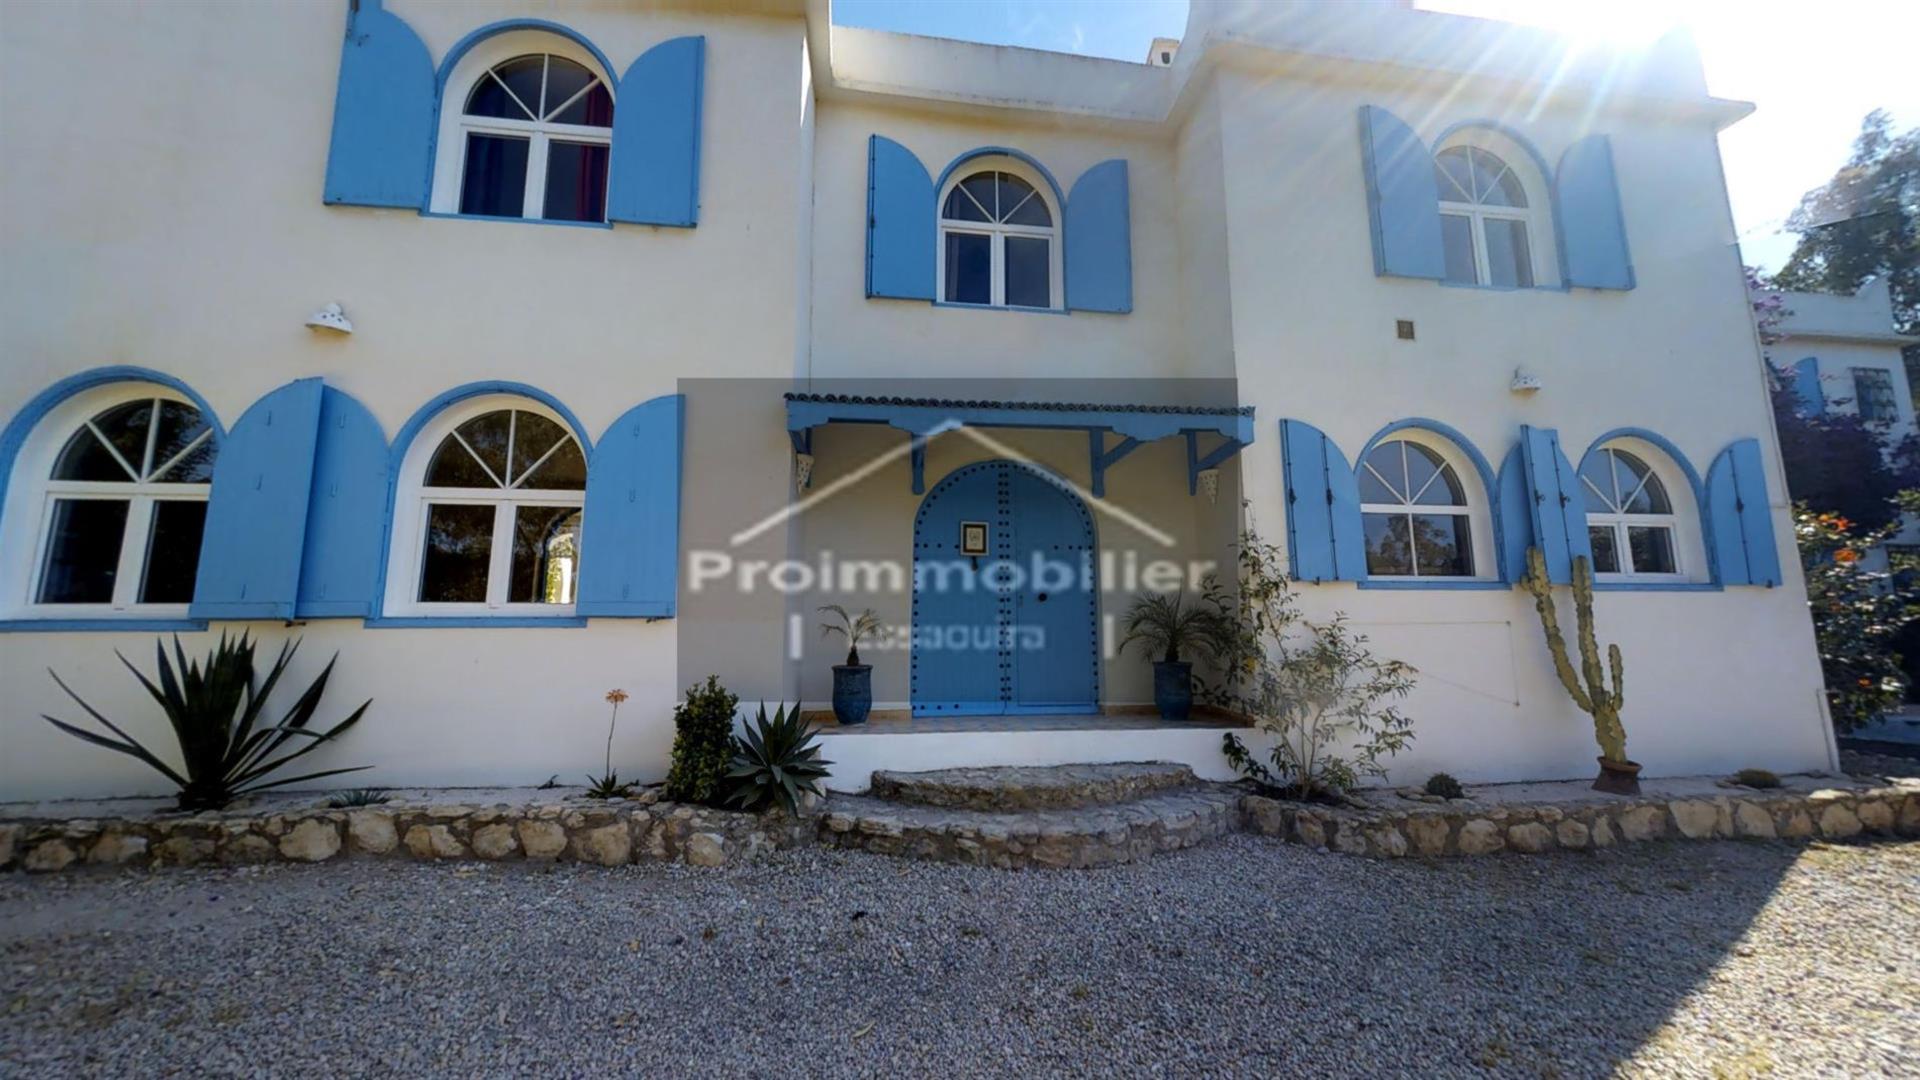 24-04-03-vmh Schönes Gästehaus von 750 m²zum Verkauf in Essaouira Garten 4989m²